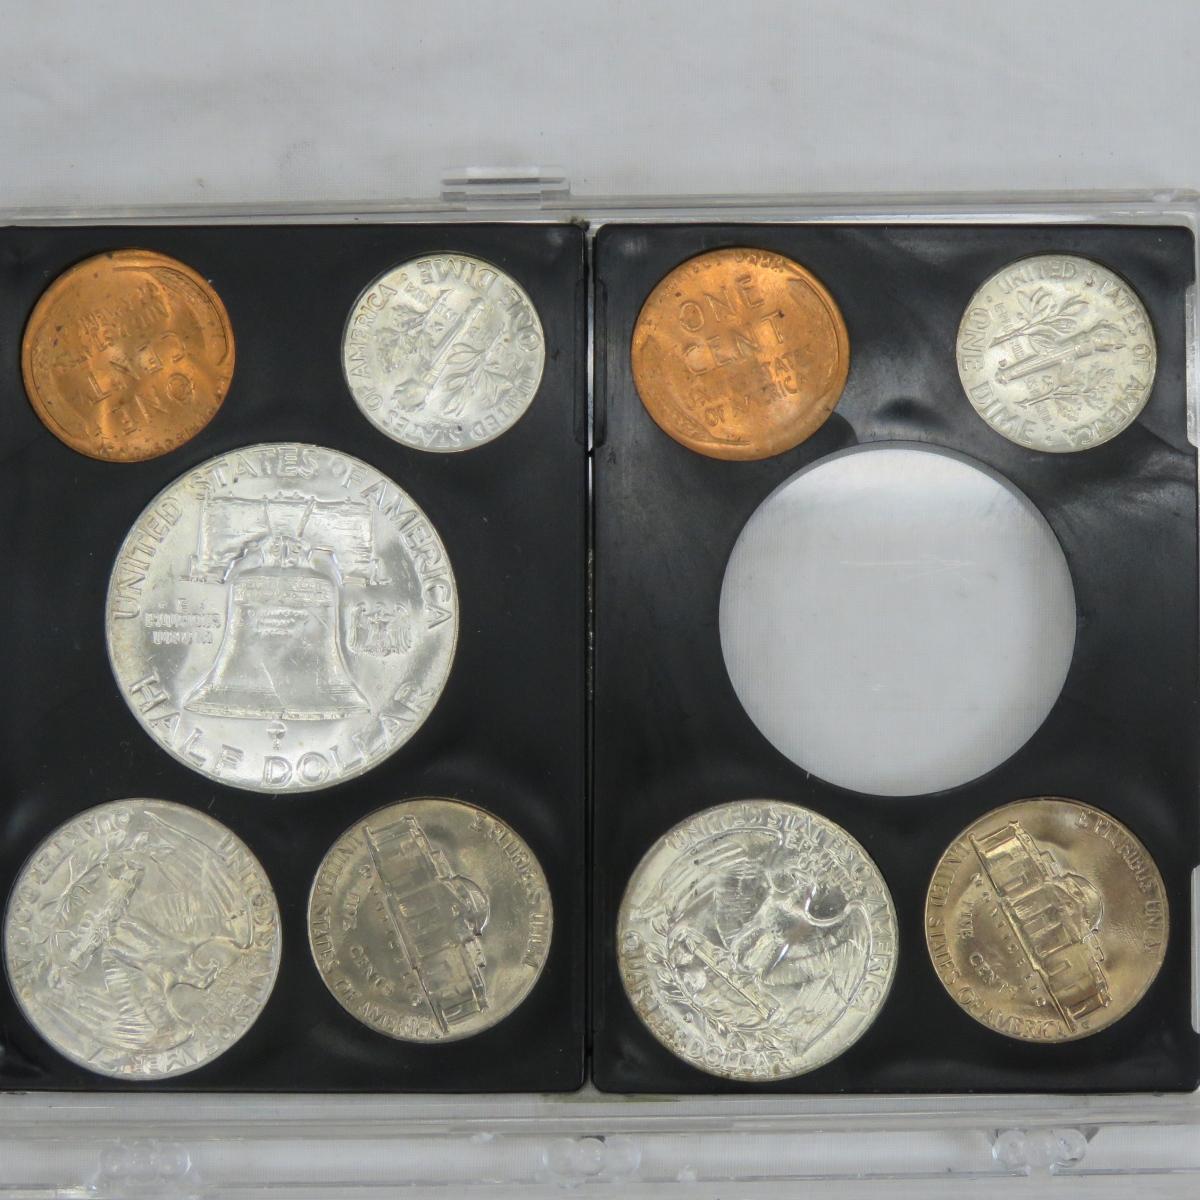 1956 P & D, 1958 P & D US Mint Sets in cases